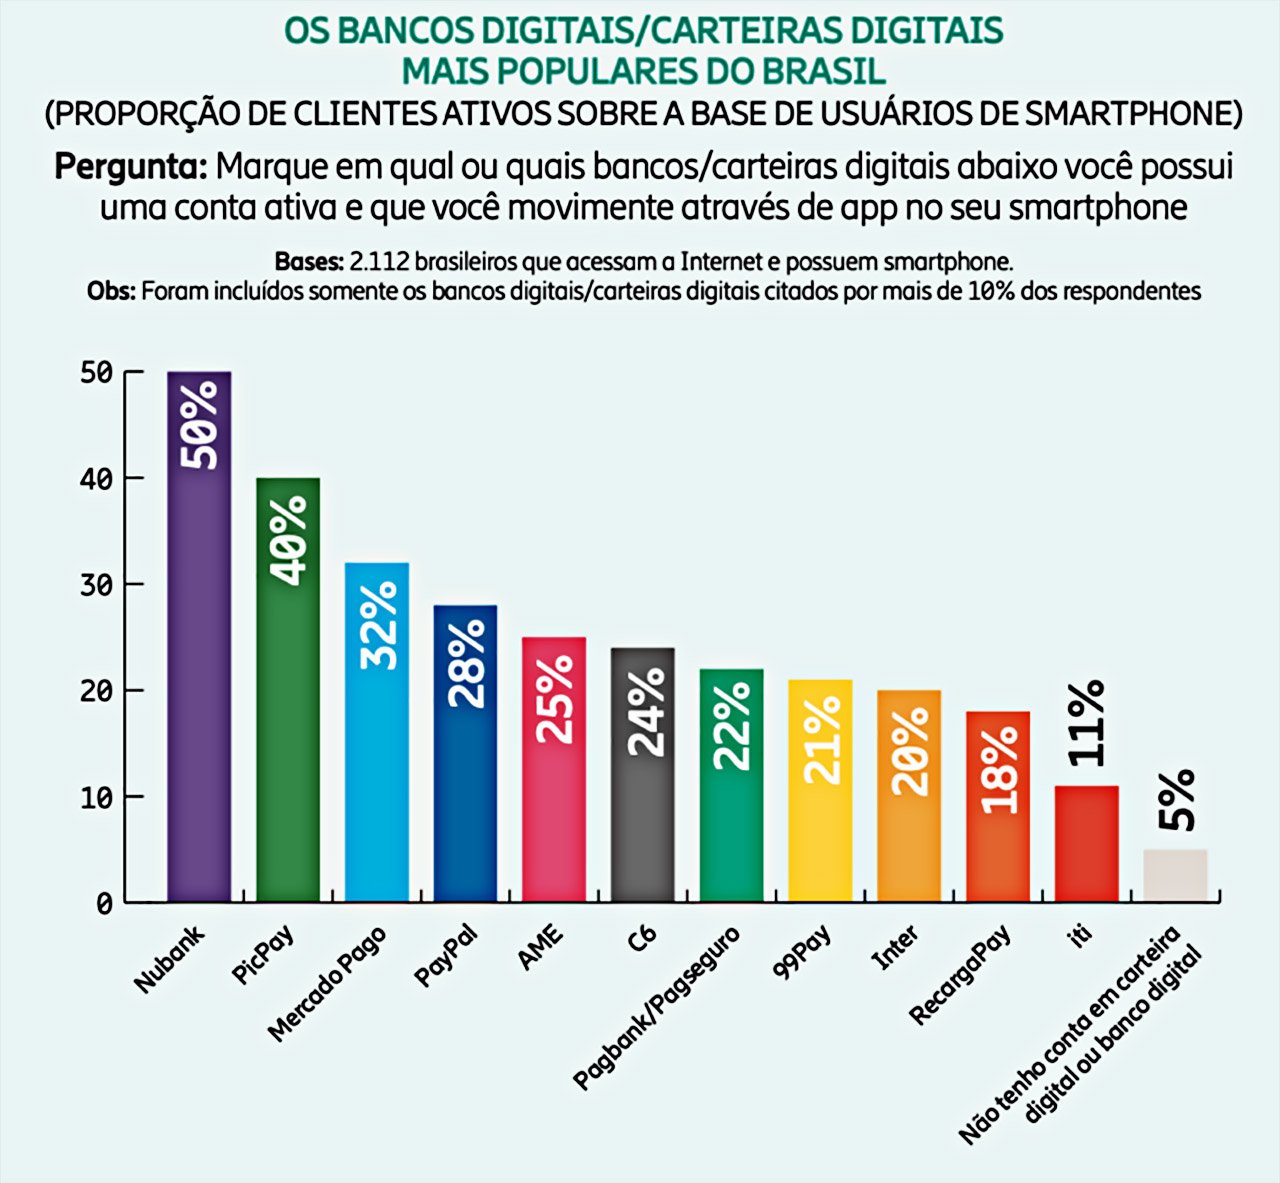 A amostra da pesquisa foi de 2.112 brasileiros que acessam a internet e têm smartphones.